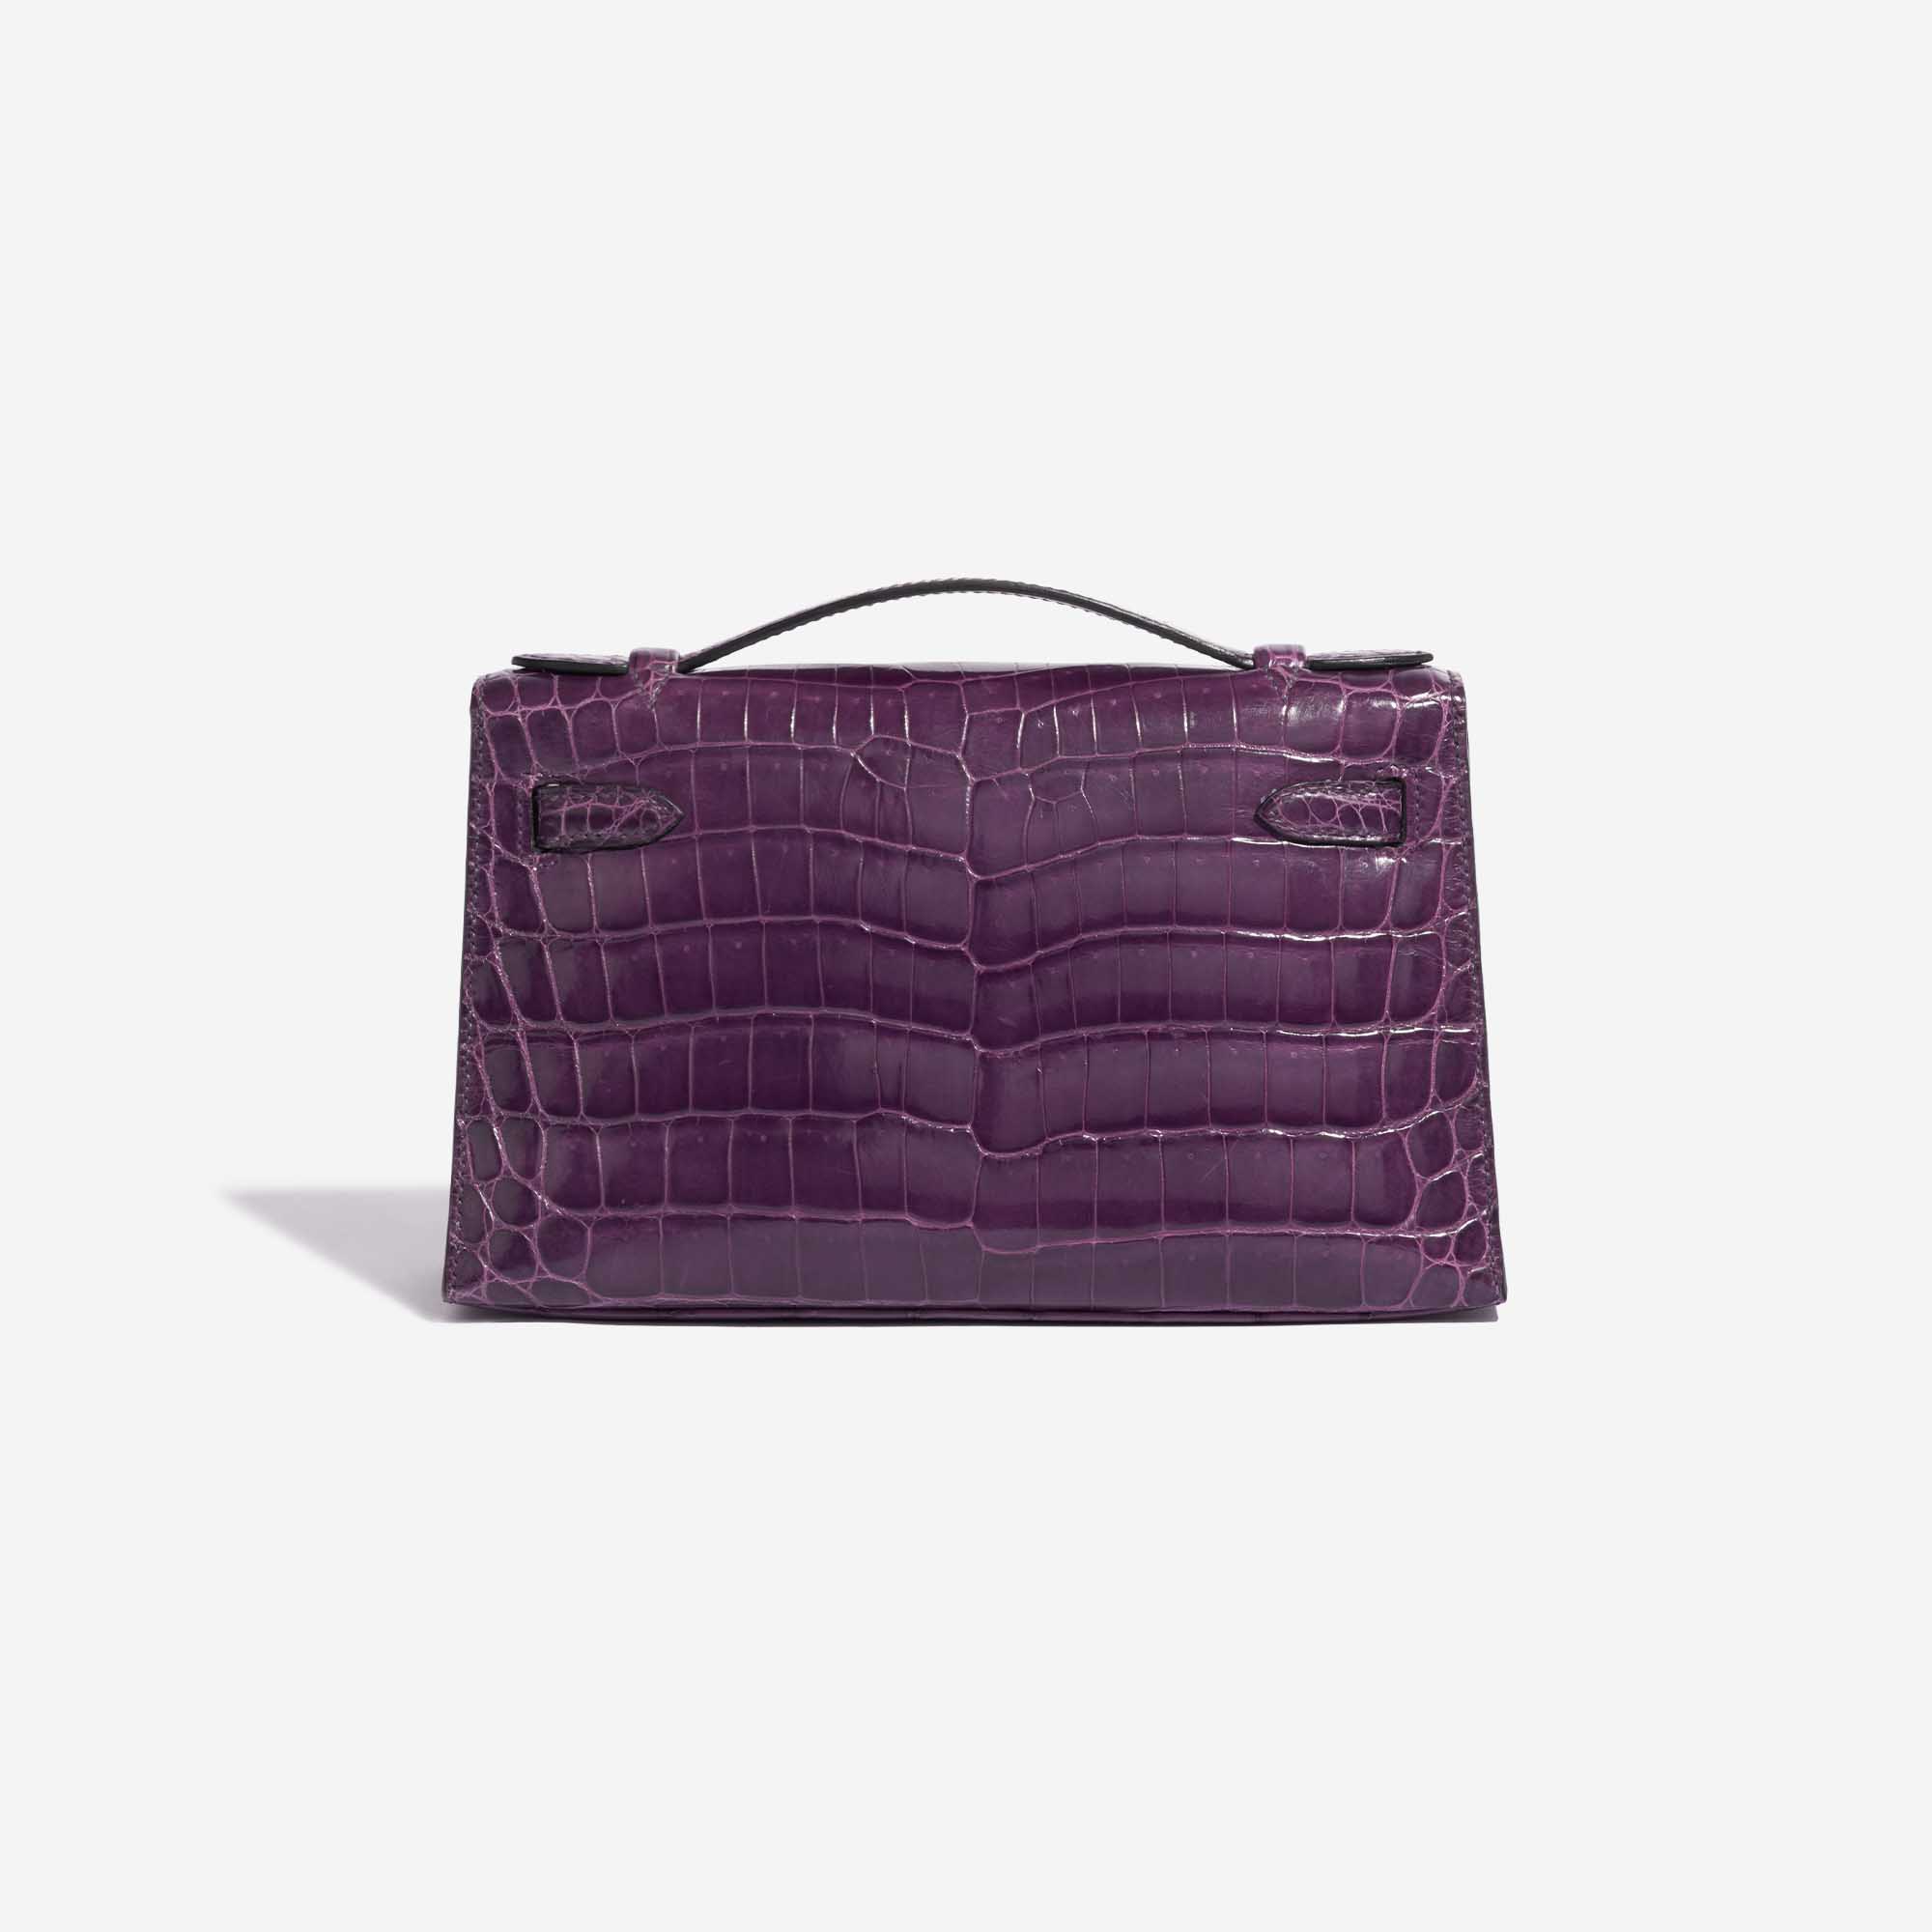 Pre-owned Hermès Tasche Kelly Pochette Alligator Amethyst Violet Back | Verkaufen Sie Ihre Designer-Tasche auf Saclab.com